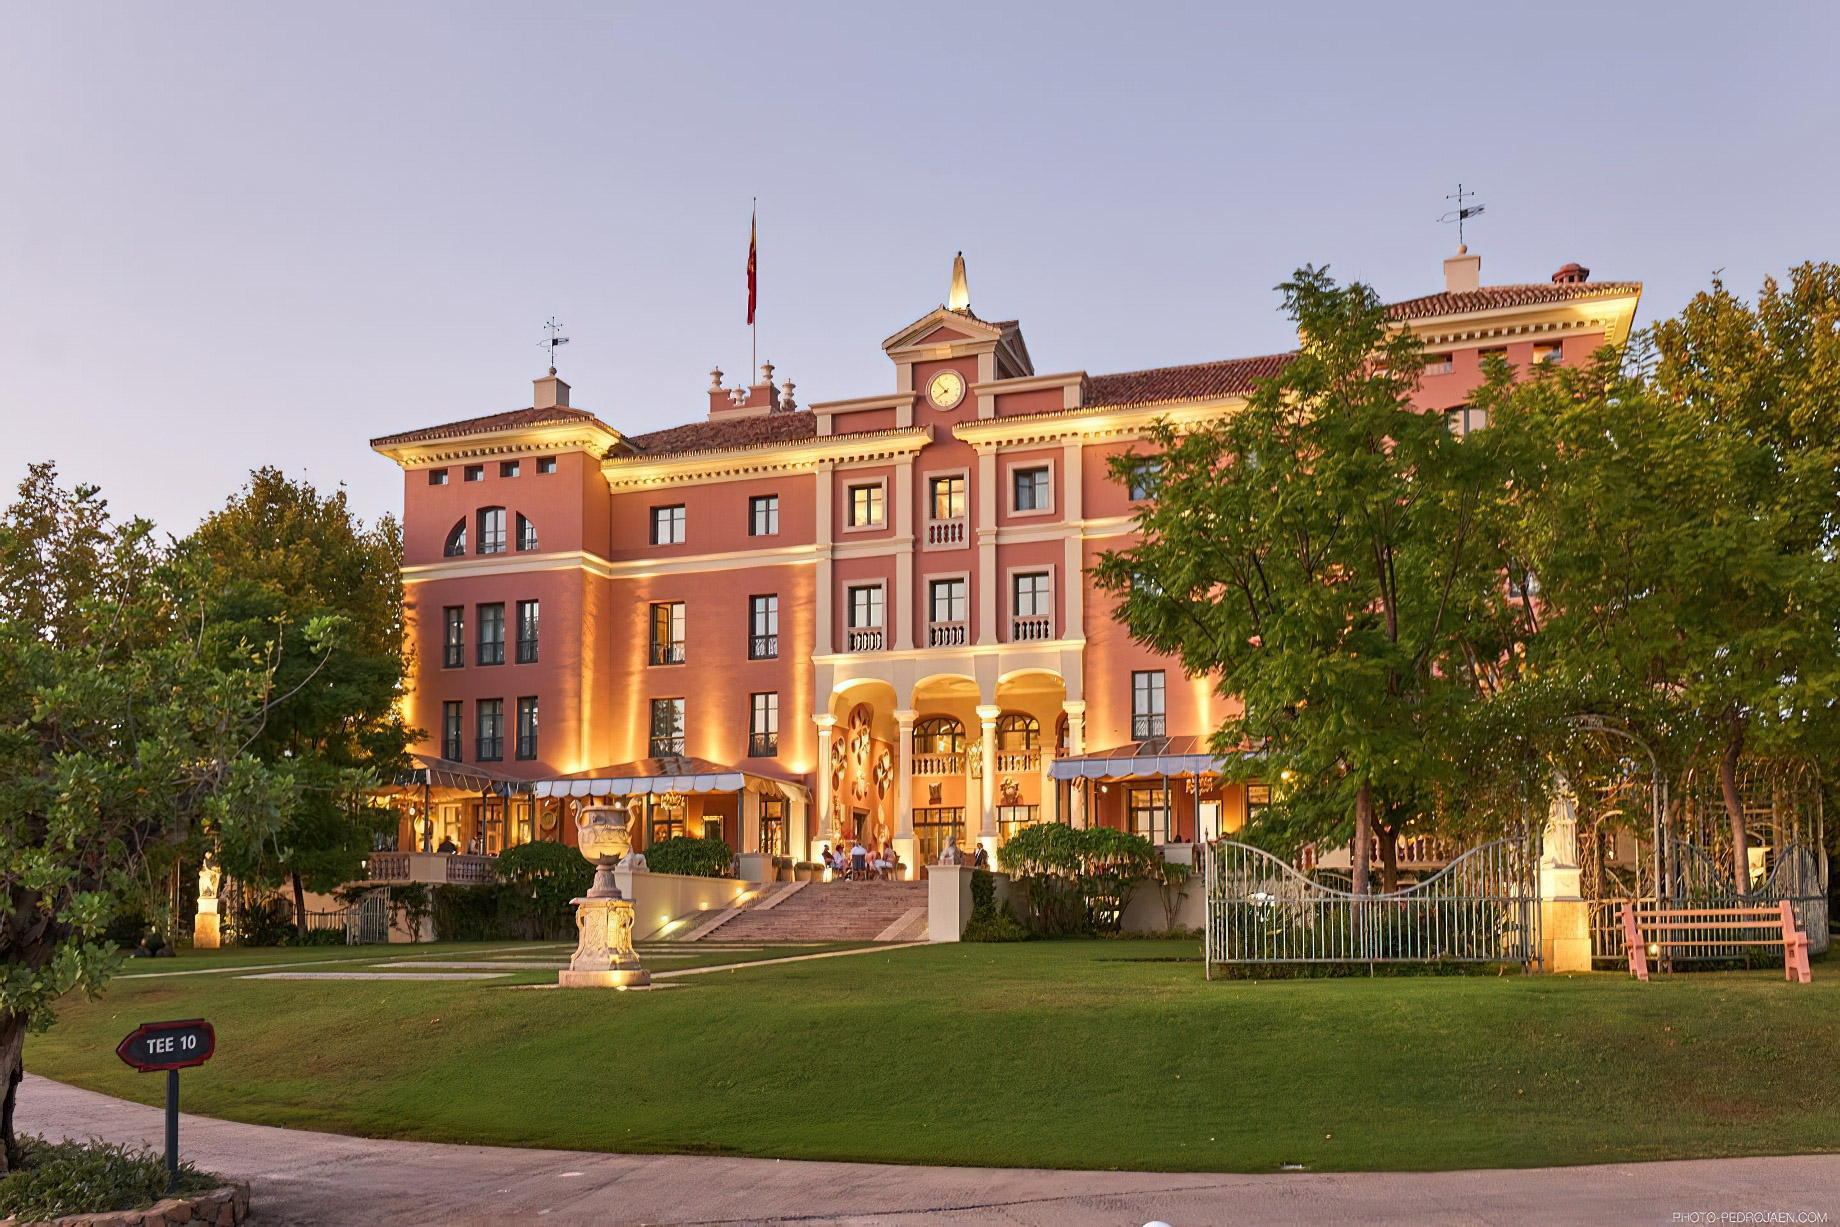 Anantara Villa Padierna Palace Benahavís Marbella Resort – Spain – Exterior Sunset View